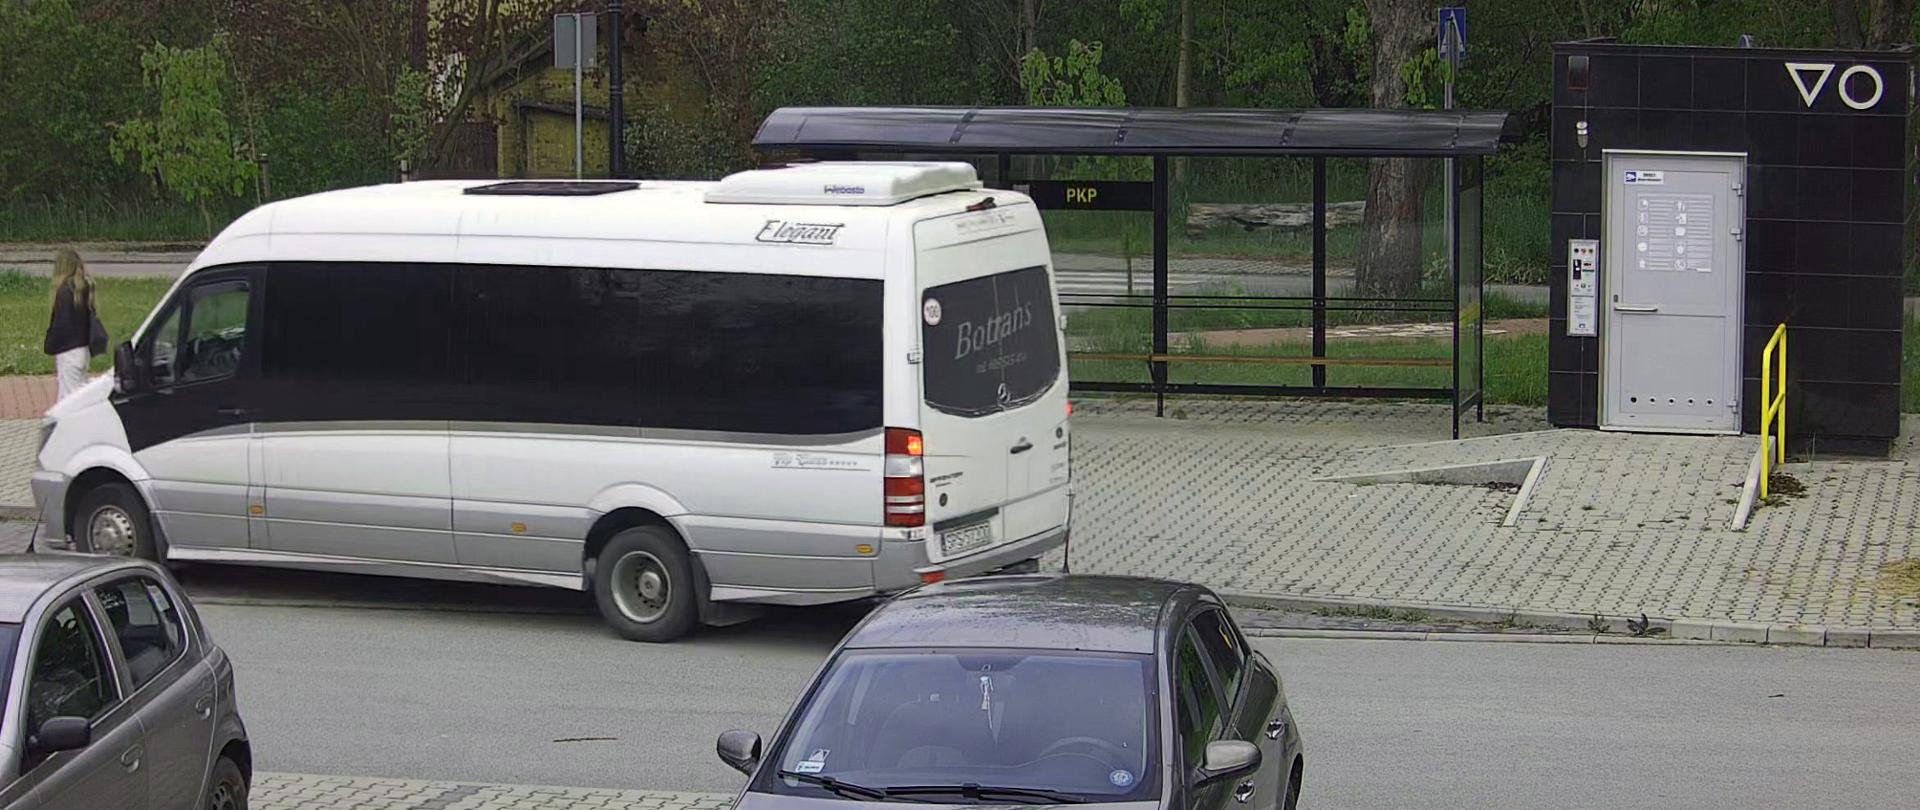 Szary bus wjeżdżający na przystanek autobusowy. W tle zielone drzewa.